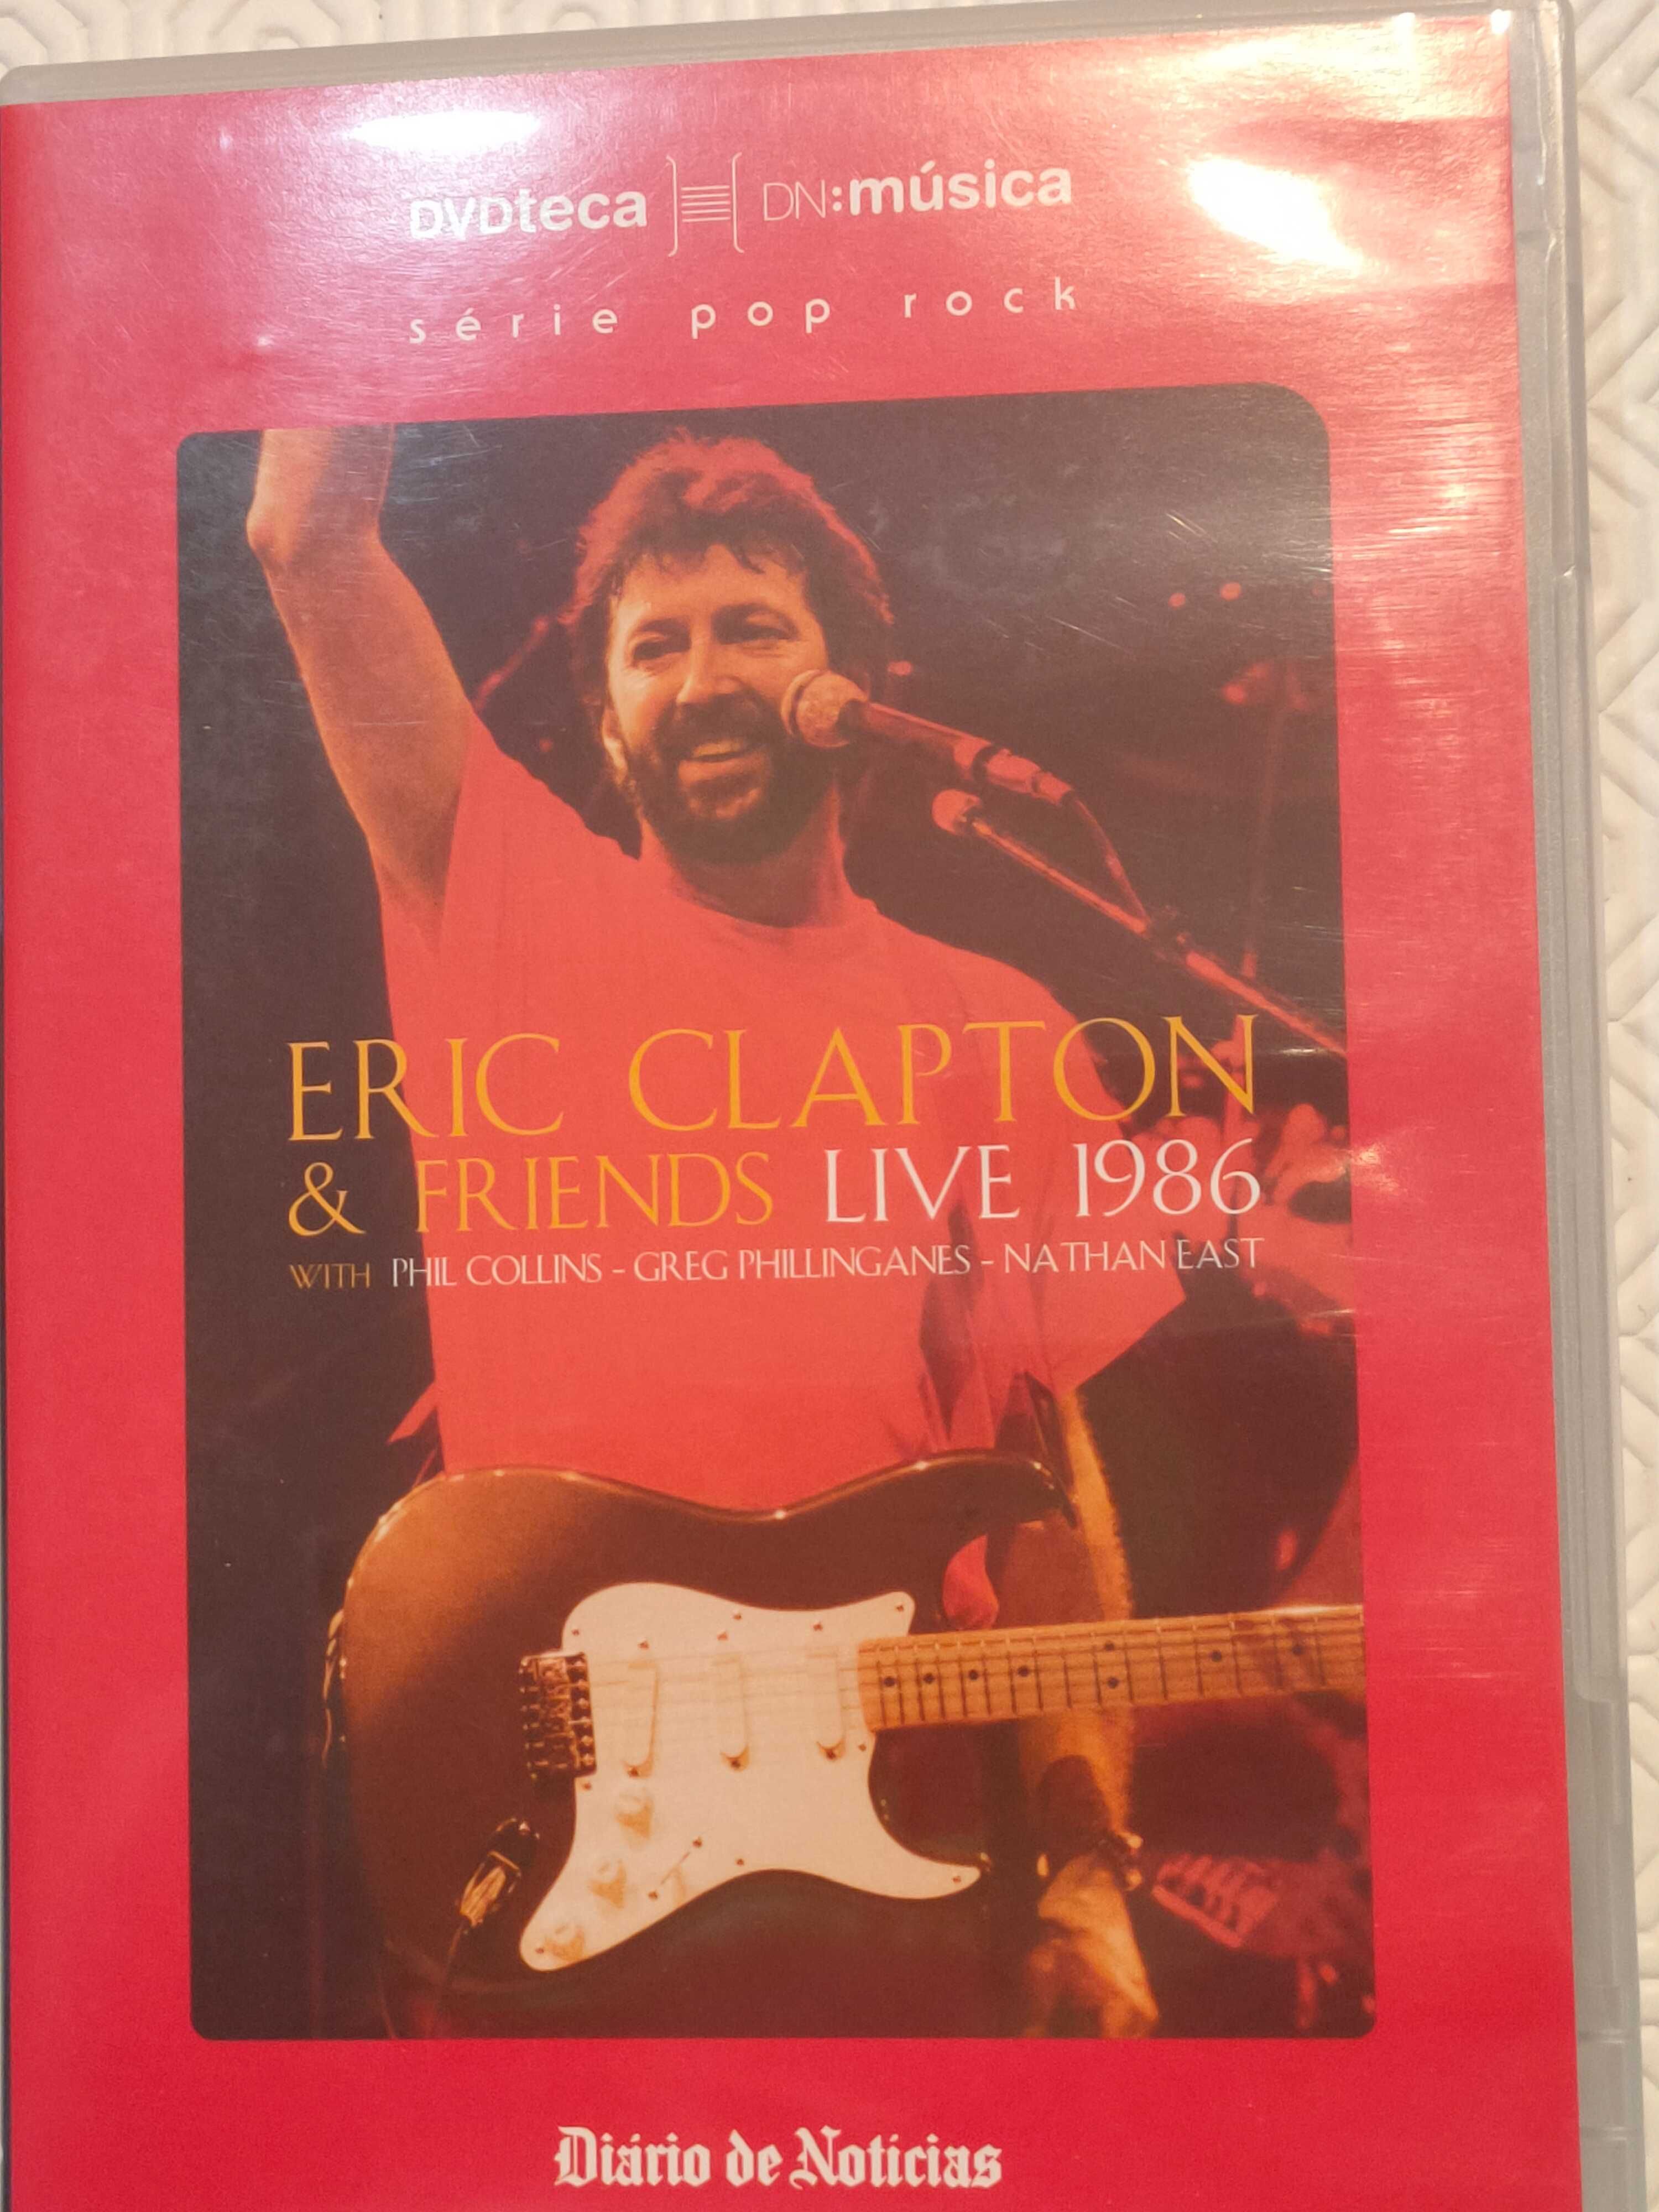 DVD Eric Clapton & friends live 1986